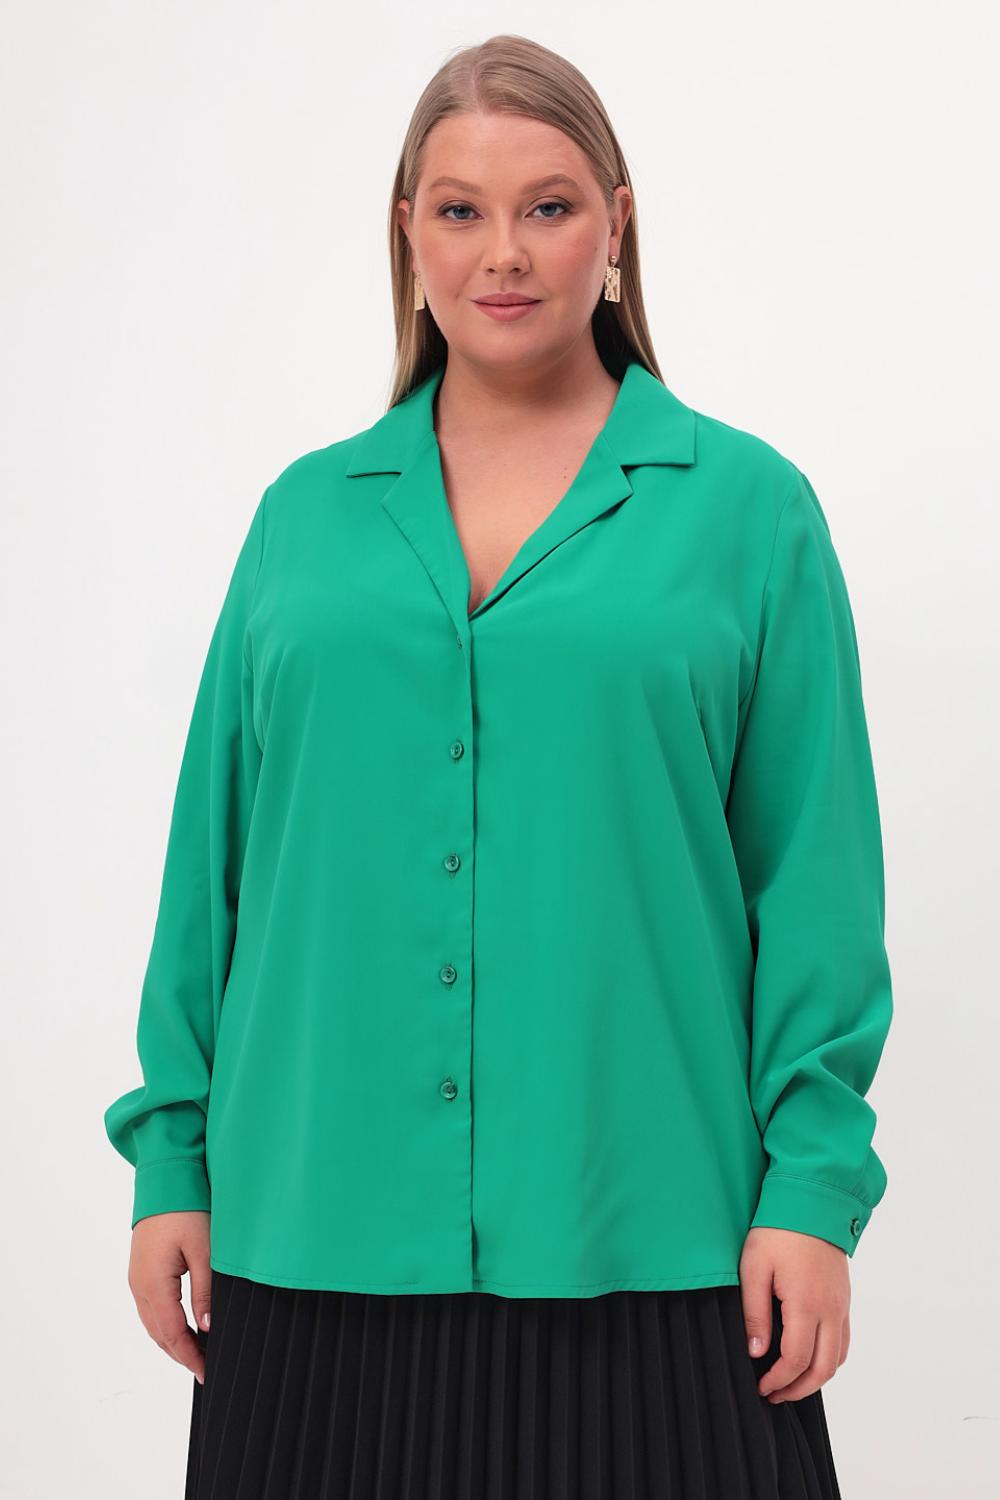 Салатовая рубашка из шелка купить онлайн в интернет-магазине одежды больших размеров для женщин 